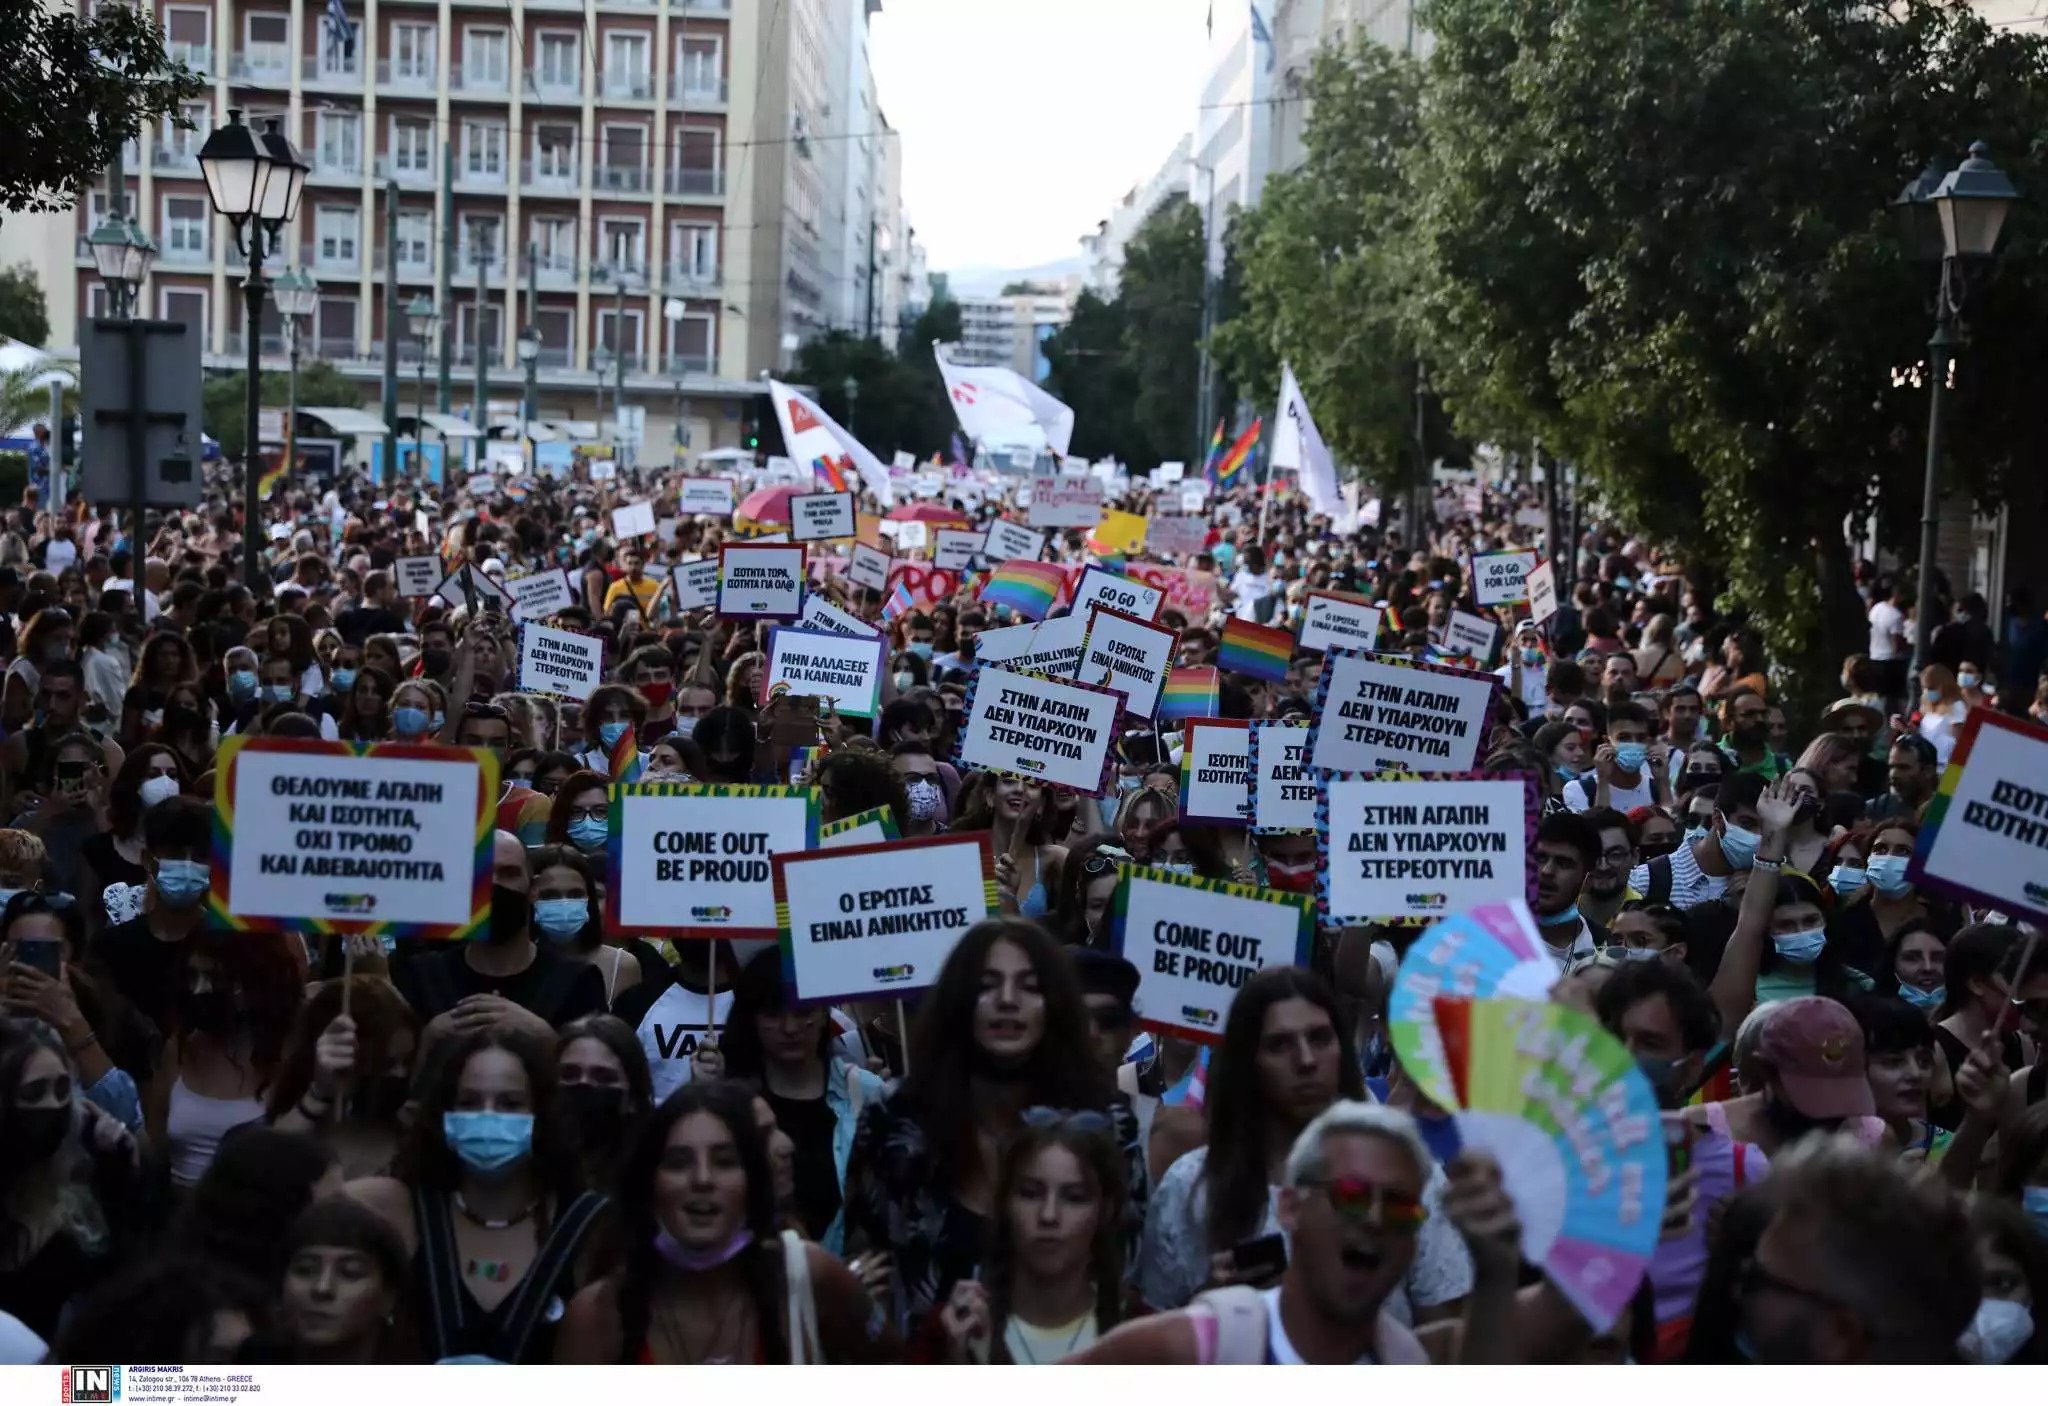 Πορεία ομοφυλόφιλων στο κέντρο της Αθήνας